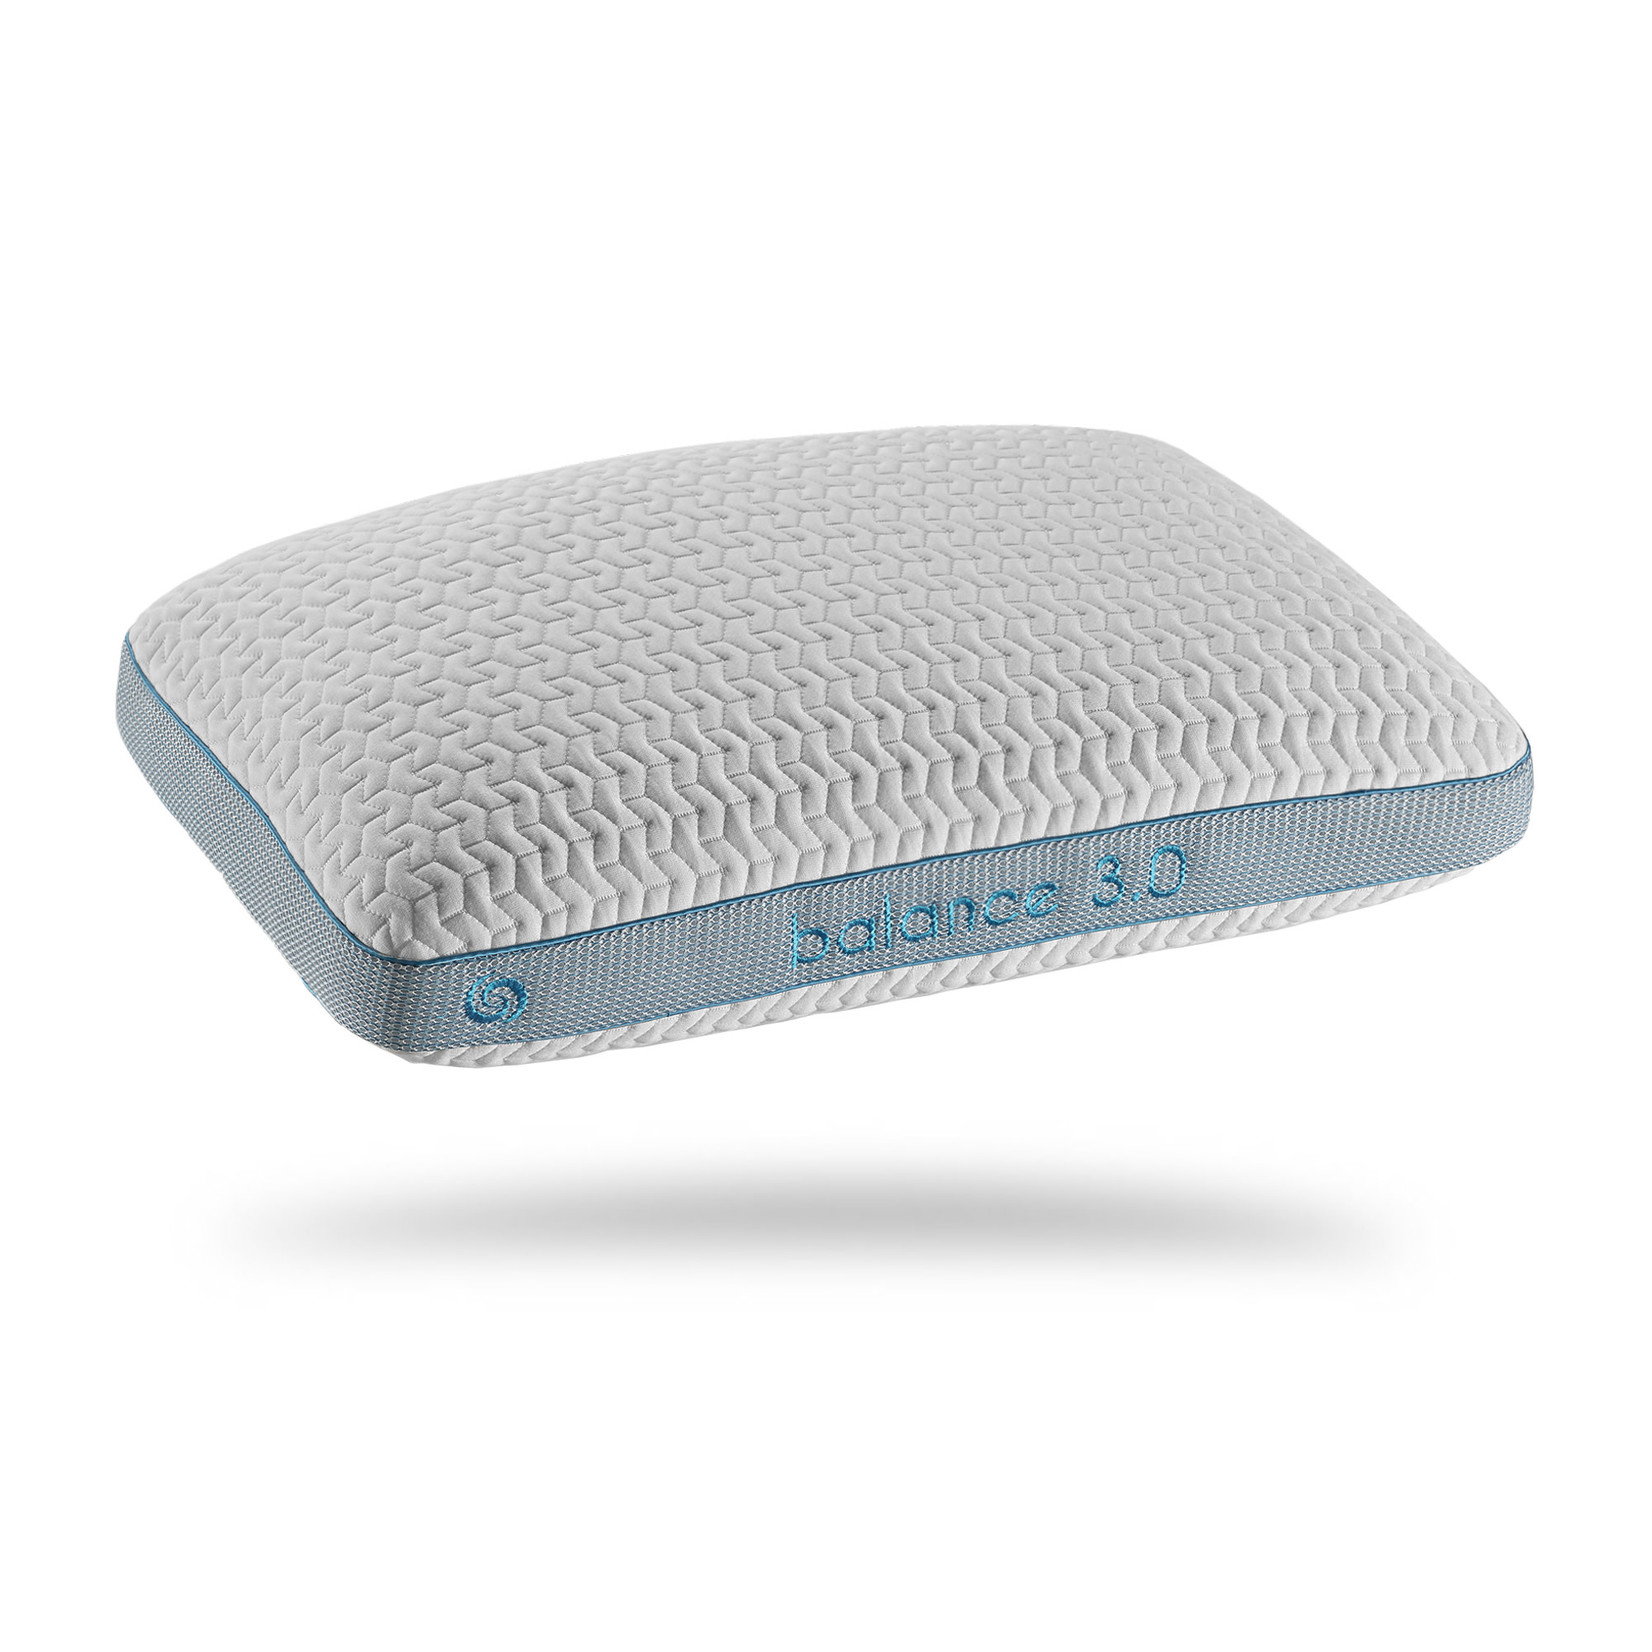 Bedgear Performance Pillow - Balance 3.0